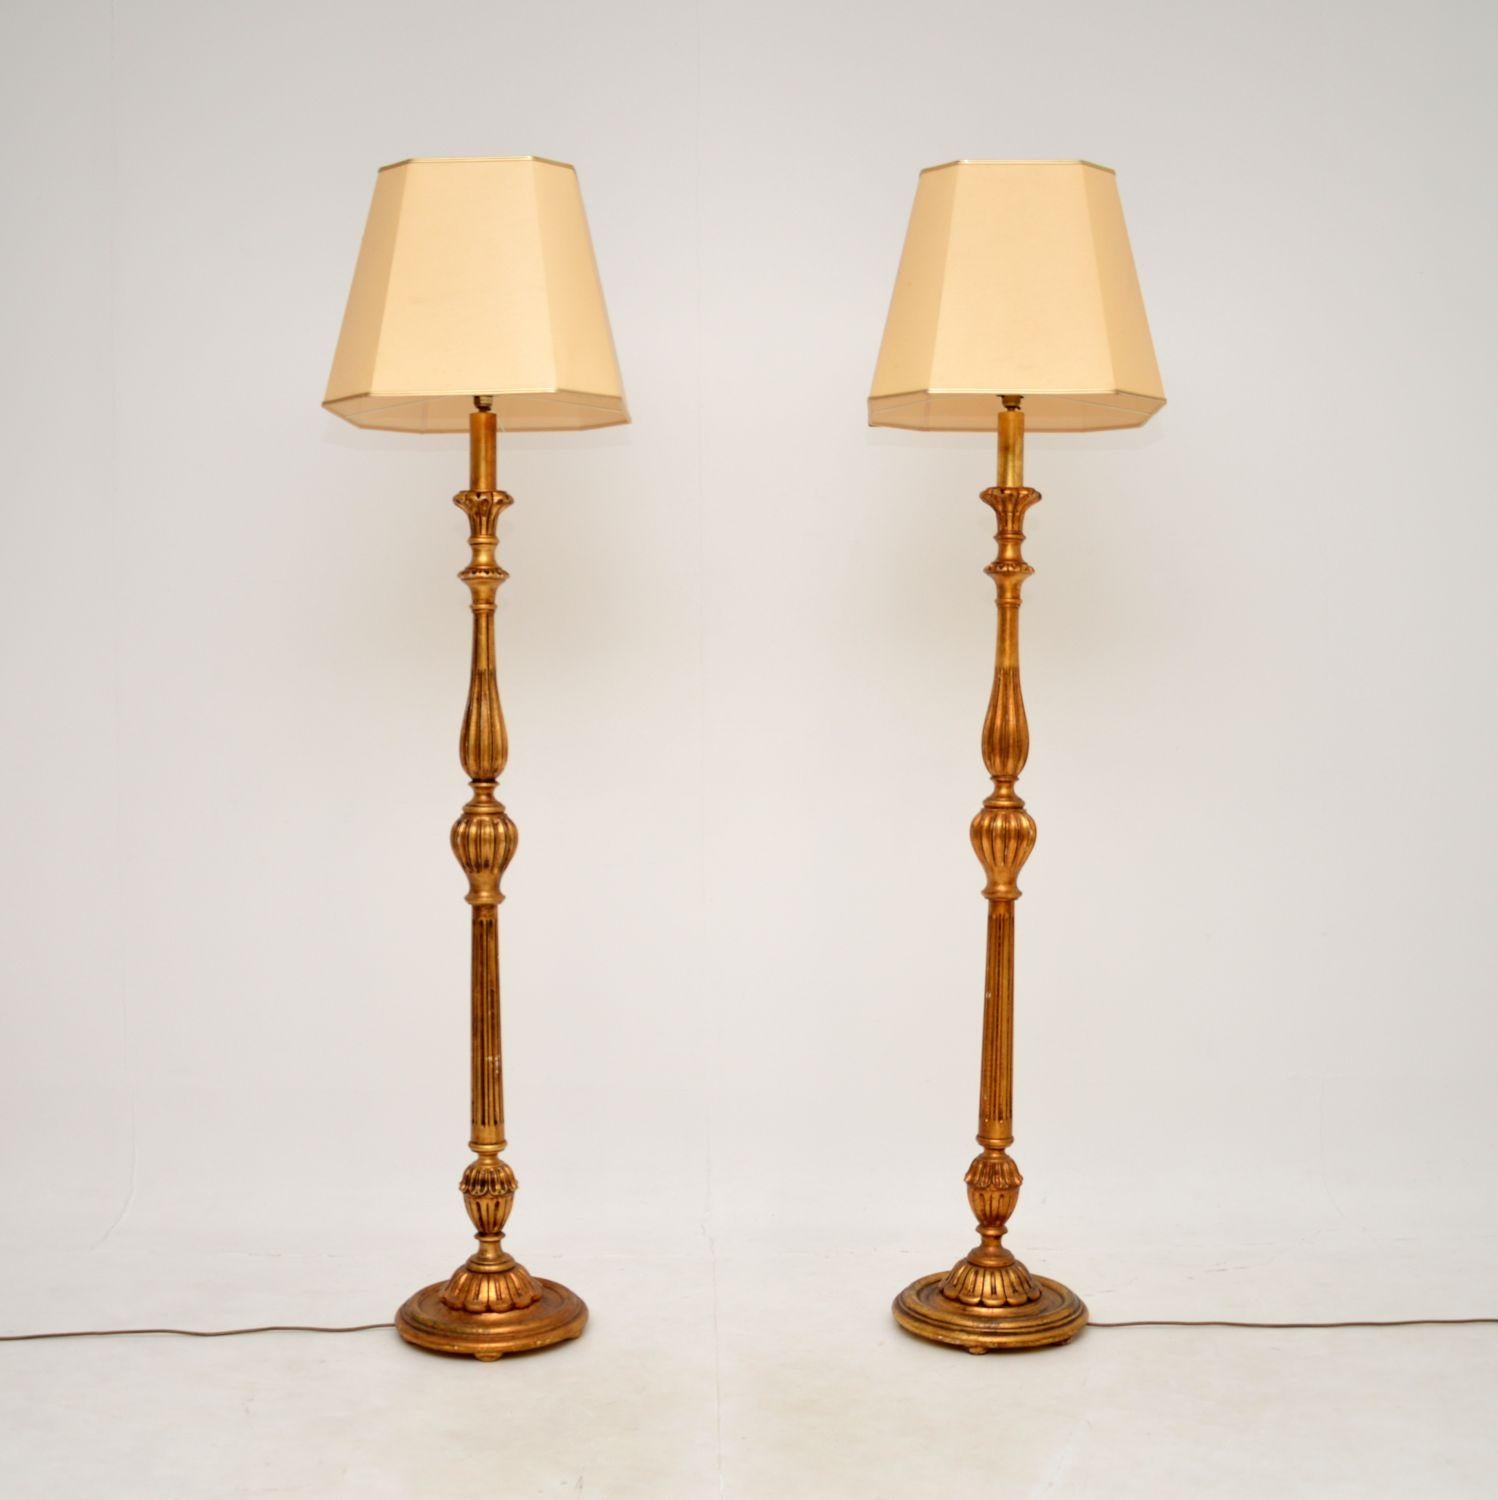 Une paire étonnante et très impressionnante d'anciens lampadaires en bois doré de style français. Fabriqués en France, ils datent des années 1950.

La qualité est superbe, ils sont magnifiquement réalisés avec des détails très fins. La finition en